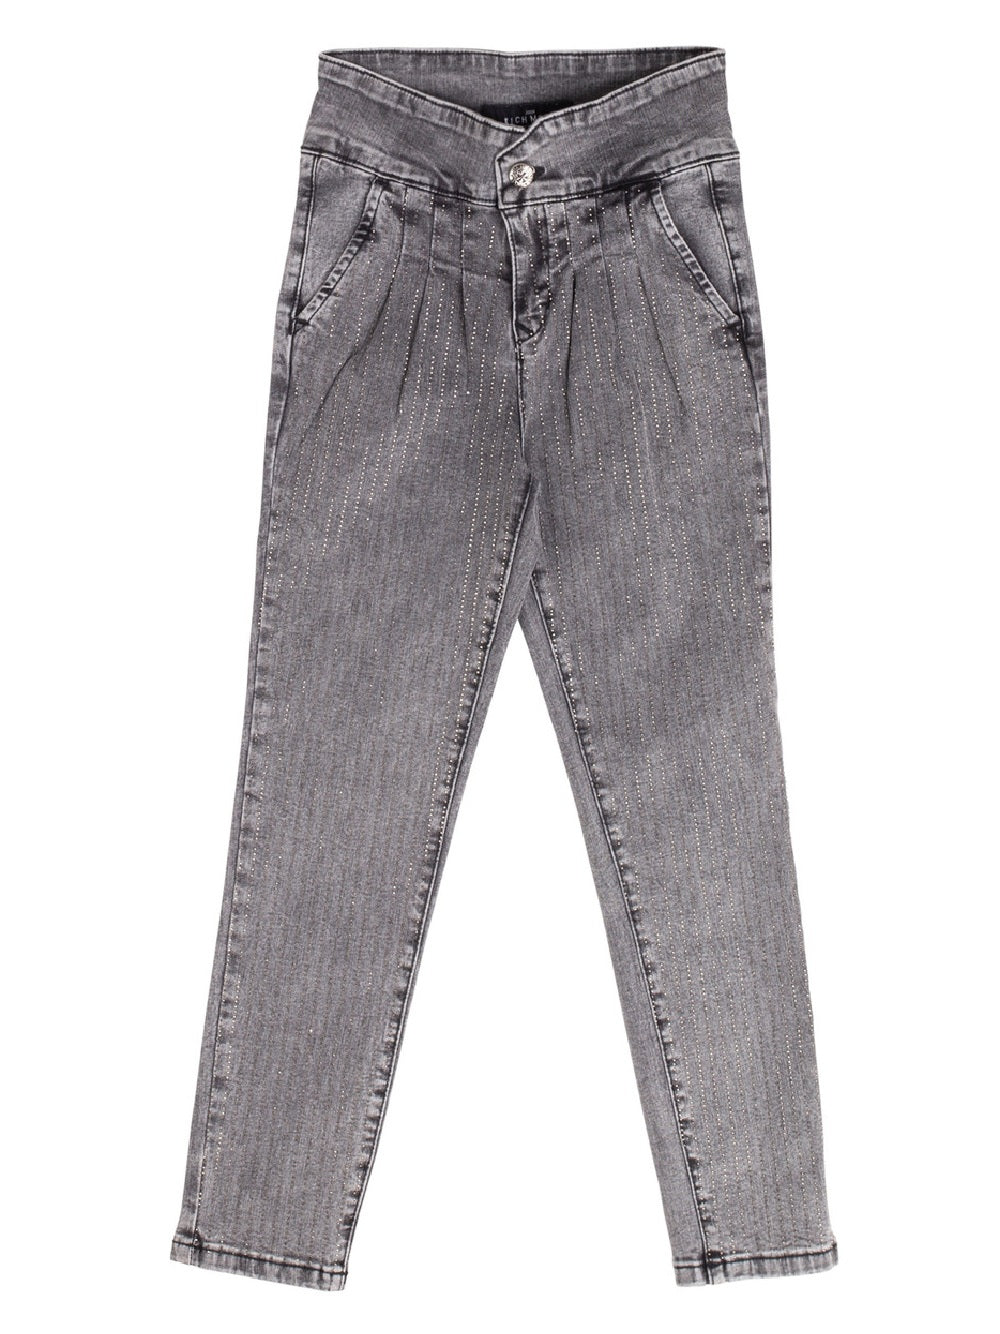 Jeans John Richmond modello RGA20120JE vita alta, tasche sui fianchi